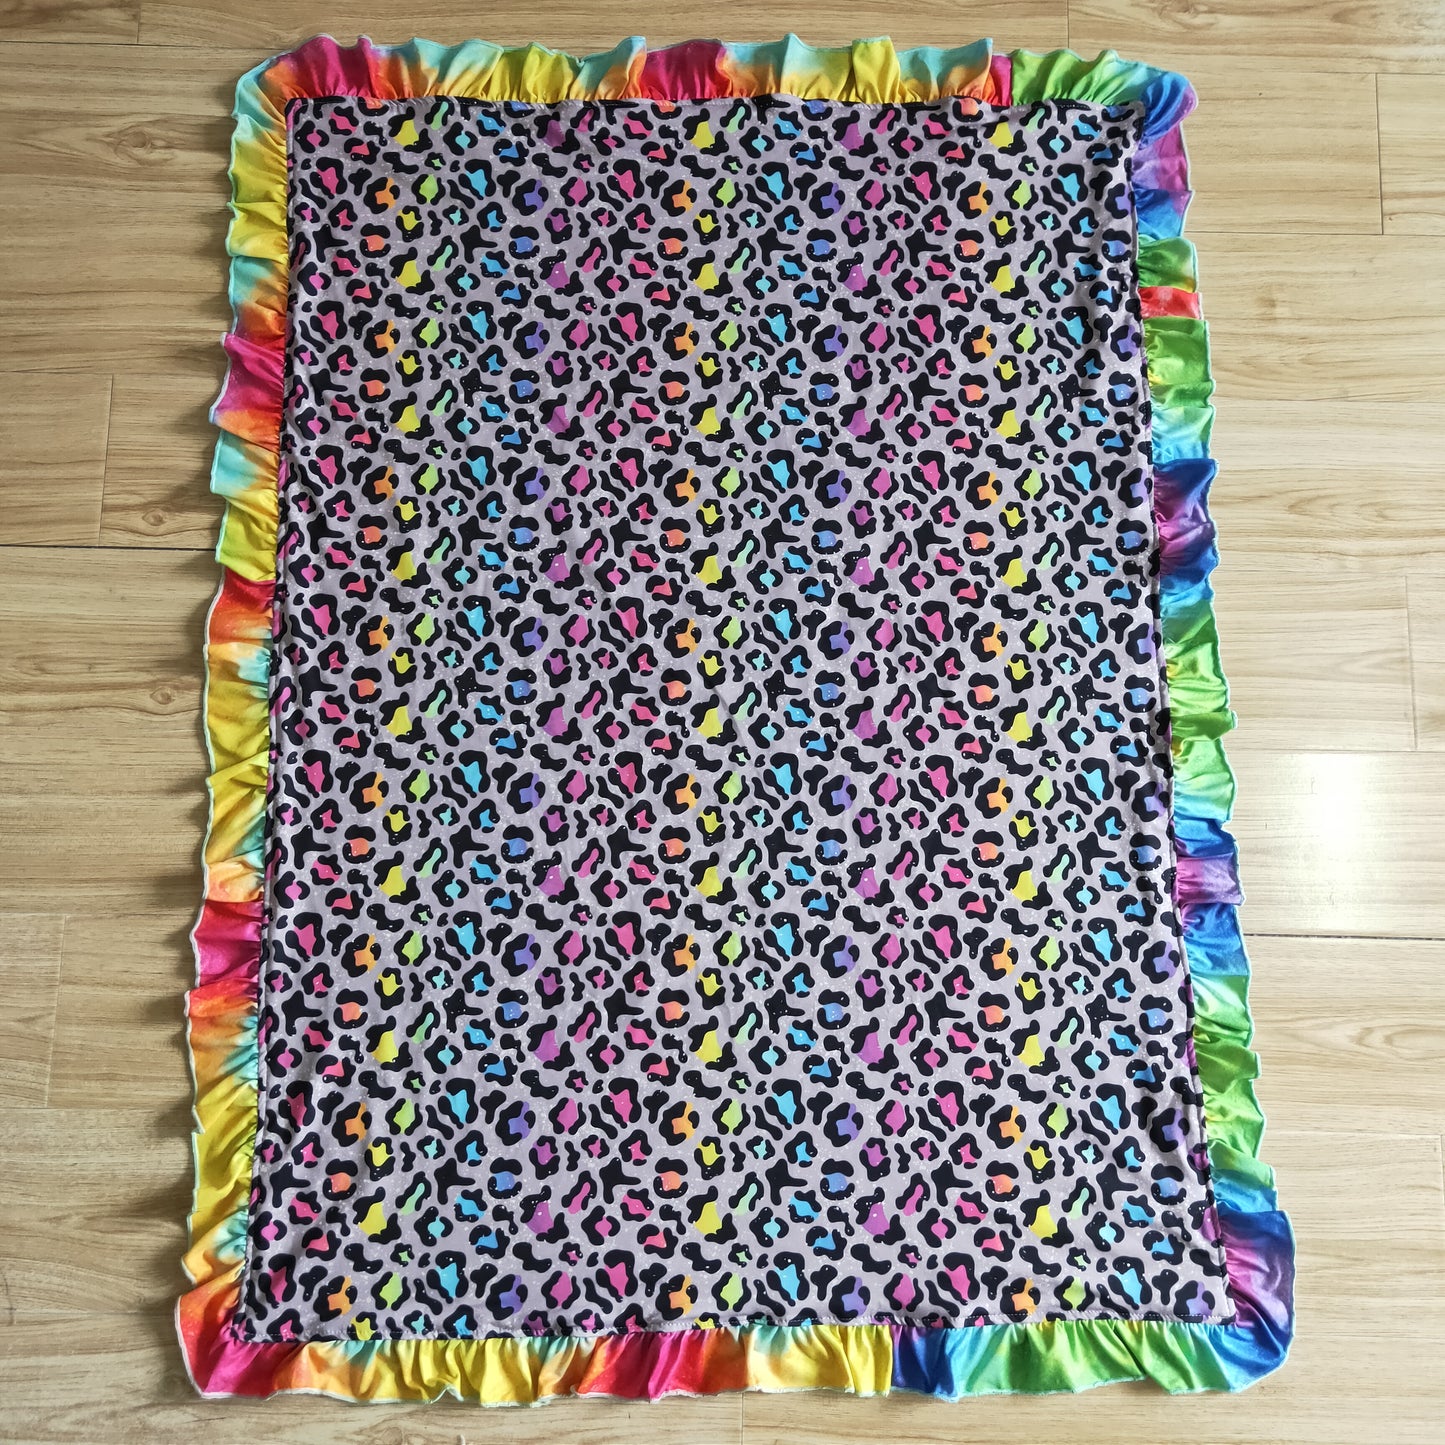 BL0028 Colorful Leopard Print Kids Blanket